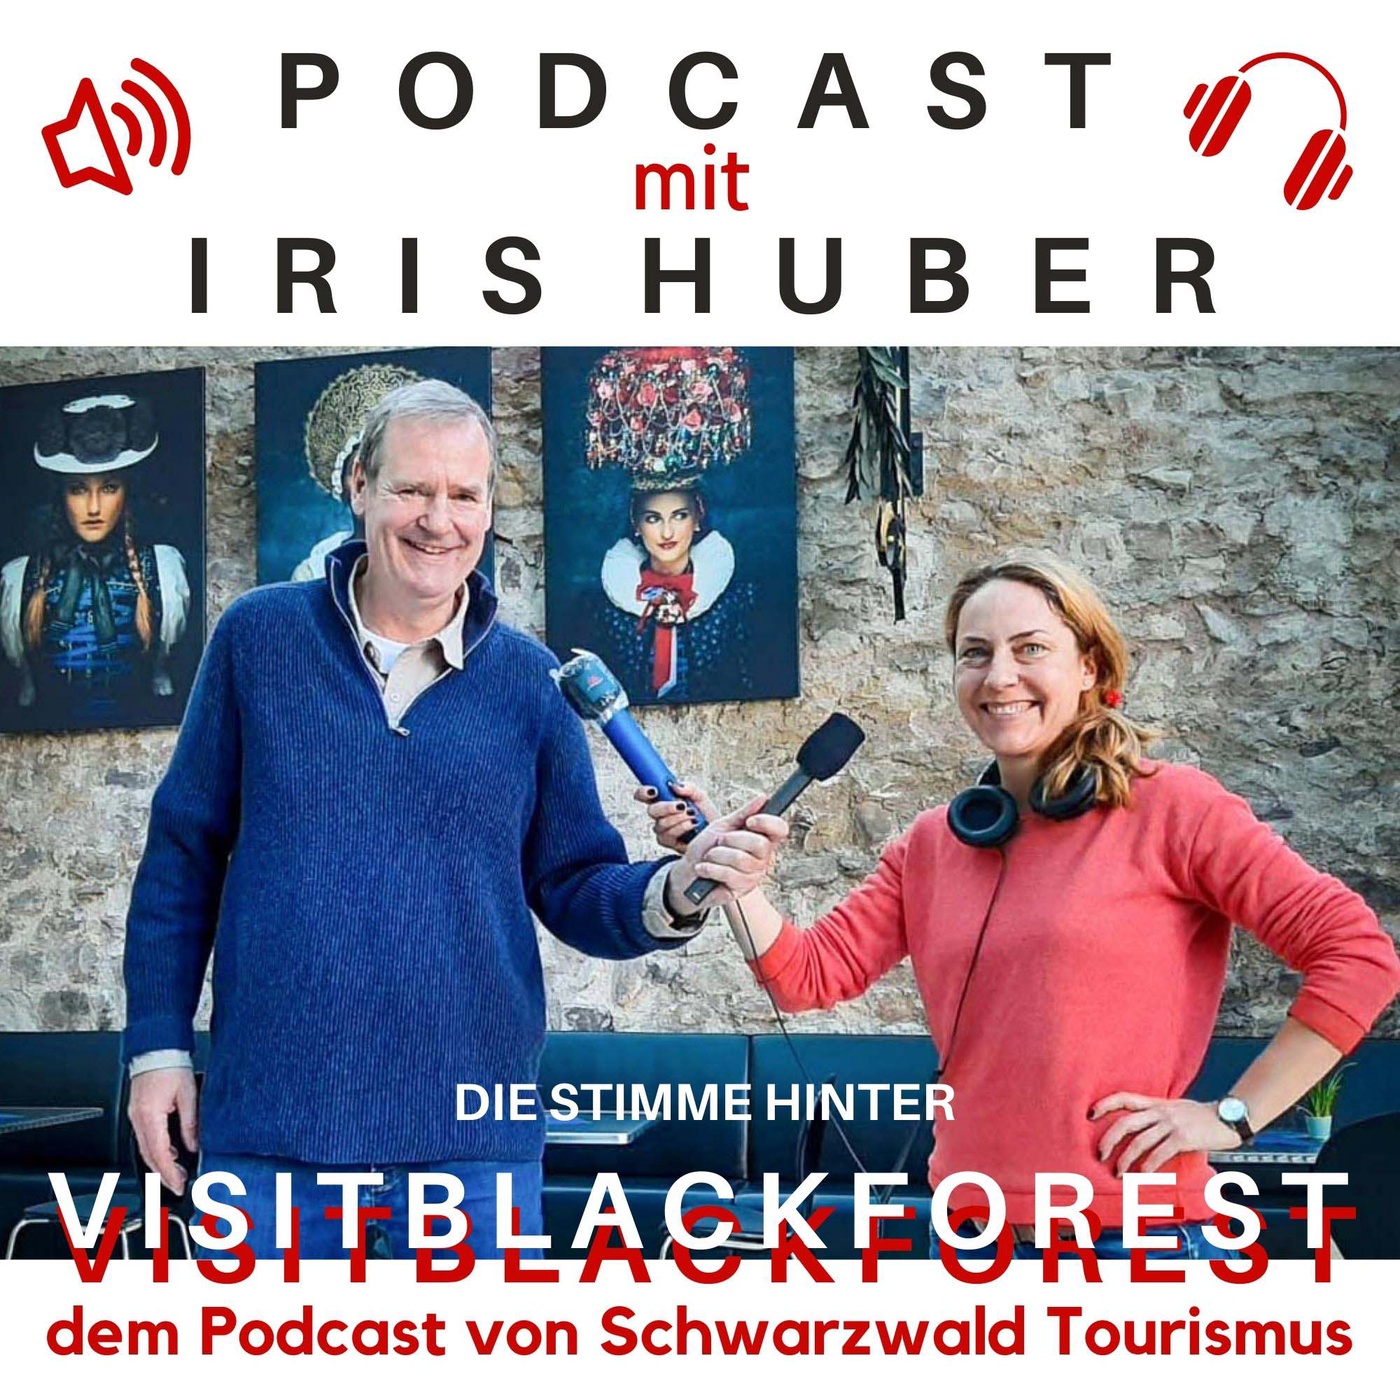 #43: Podcasterin Iris Huber - die Stimme hinter Visitblackforest, dem Podcast von Schwarzwald Tourismus